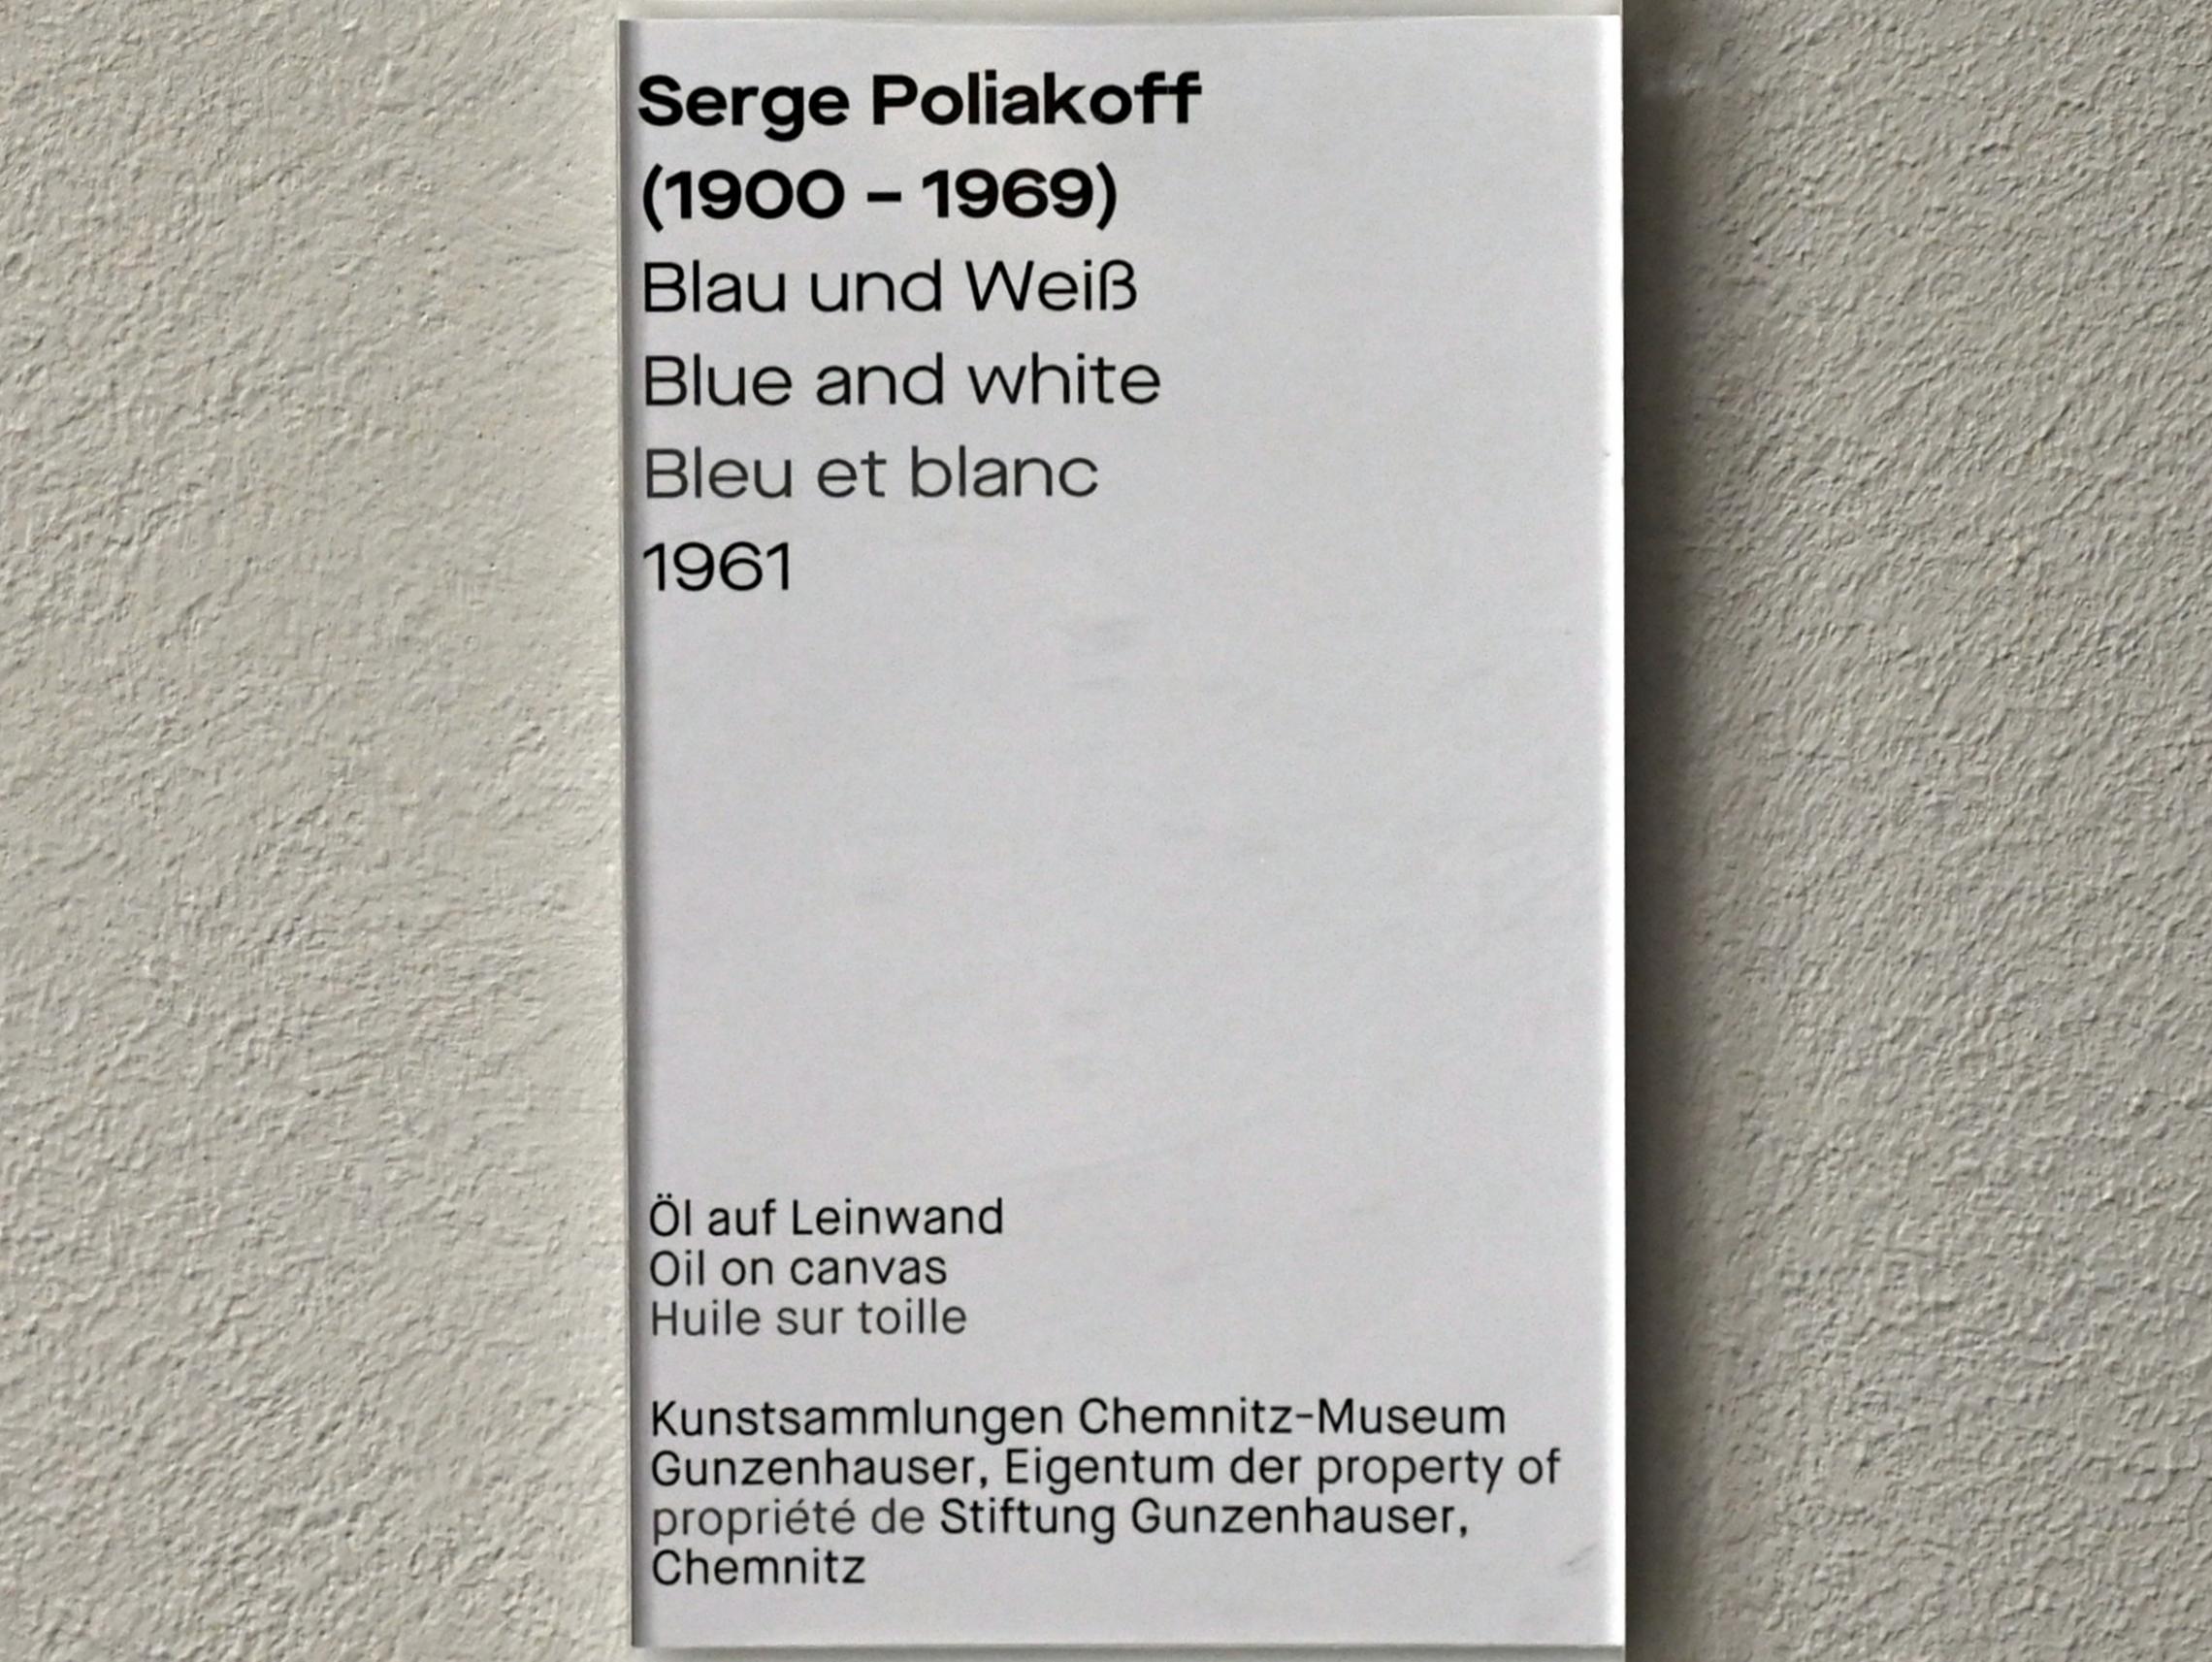 Serge Poliakoff (1936–1968), Blau und Weiß, Chemnitz, Museum Gunzenhauser, Saal 2.6 - Serge Poliakoff, 1961, Bild 2/2